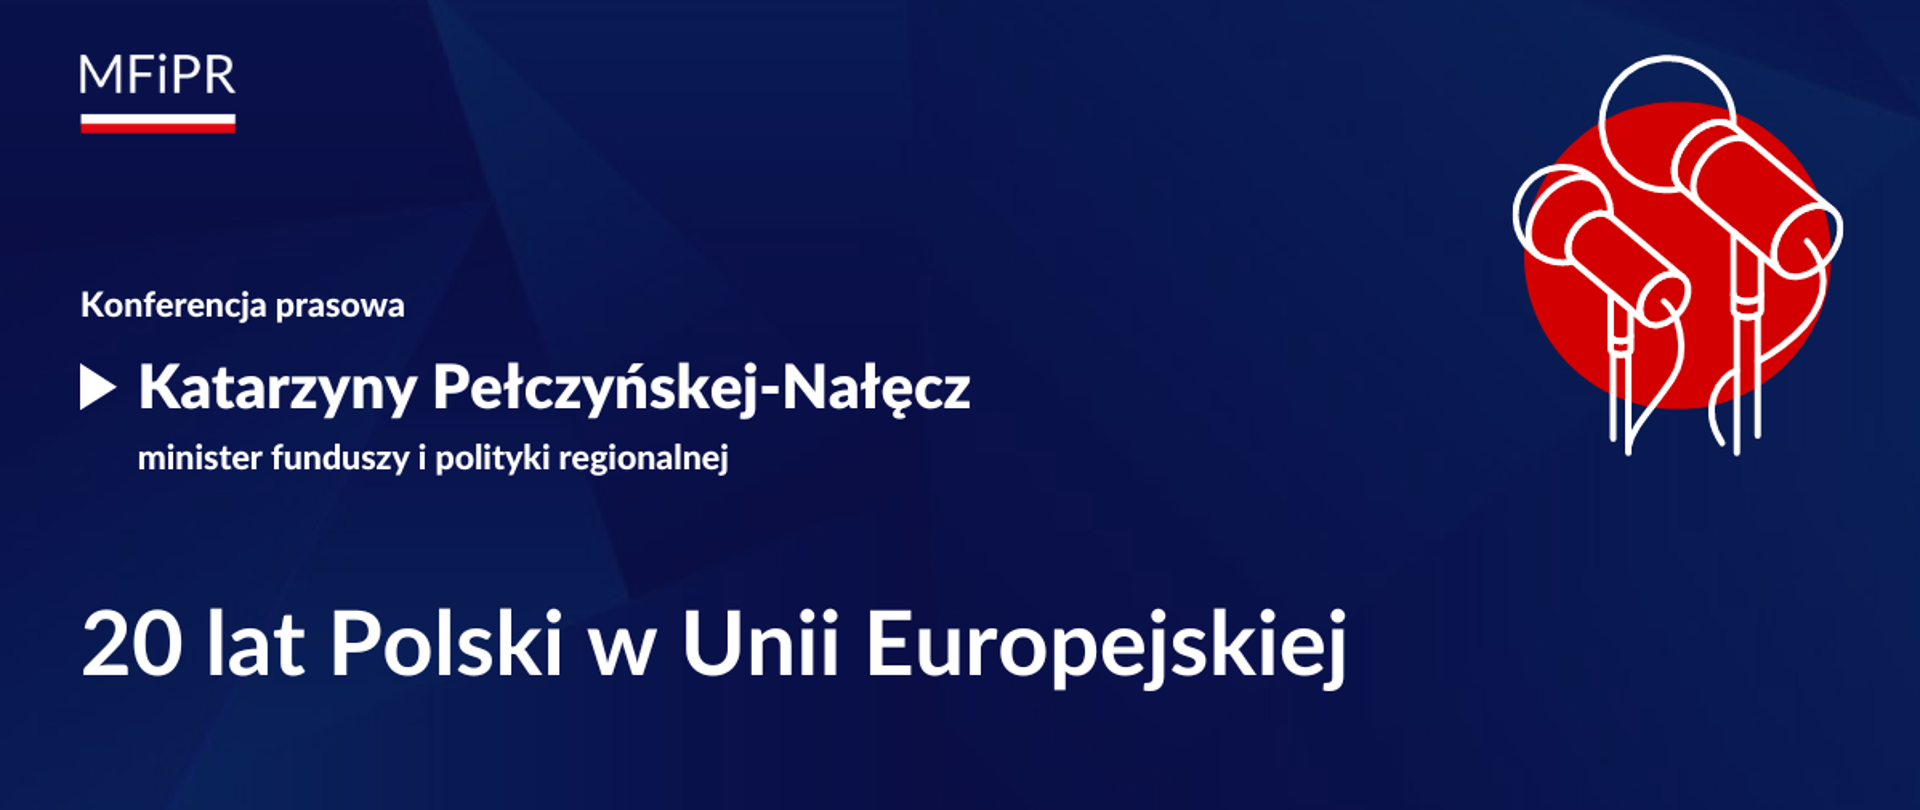 Zapowiedź konferencji minister funduszy Katarzyny Pełczyńskiej-Nałęcz